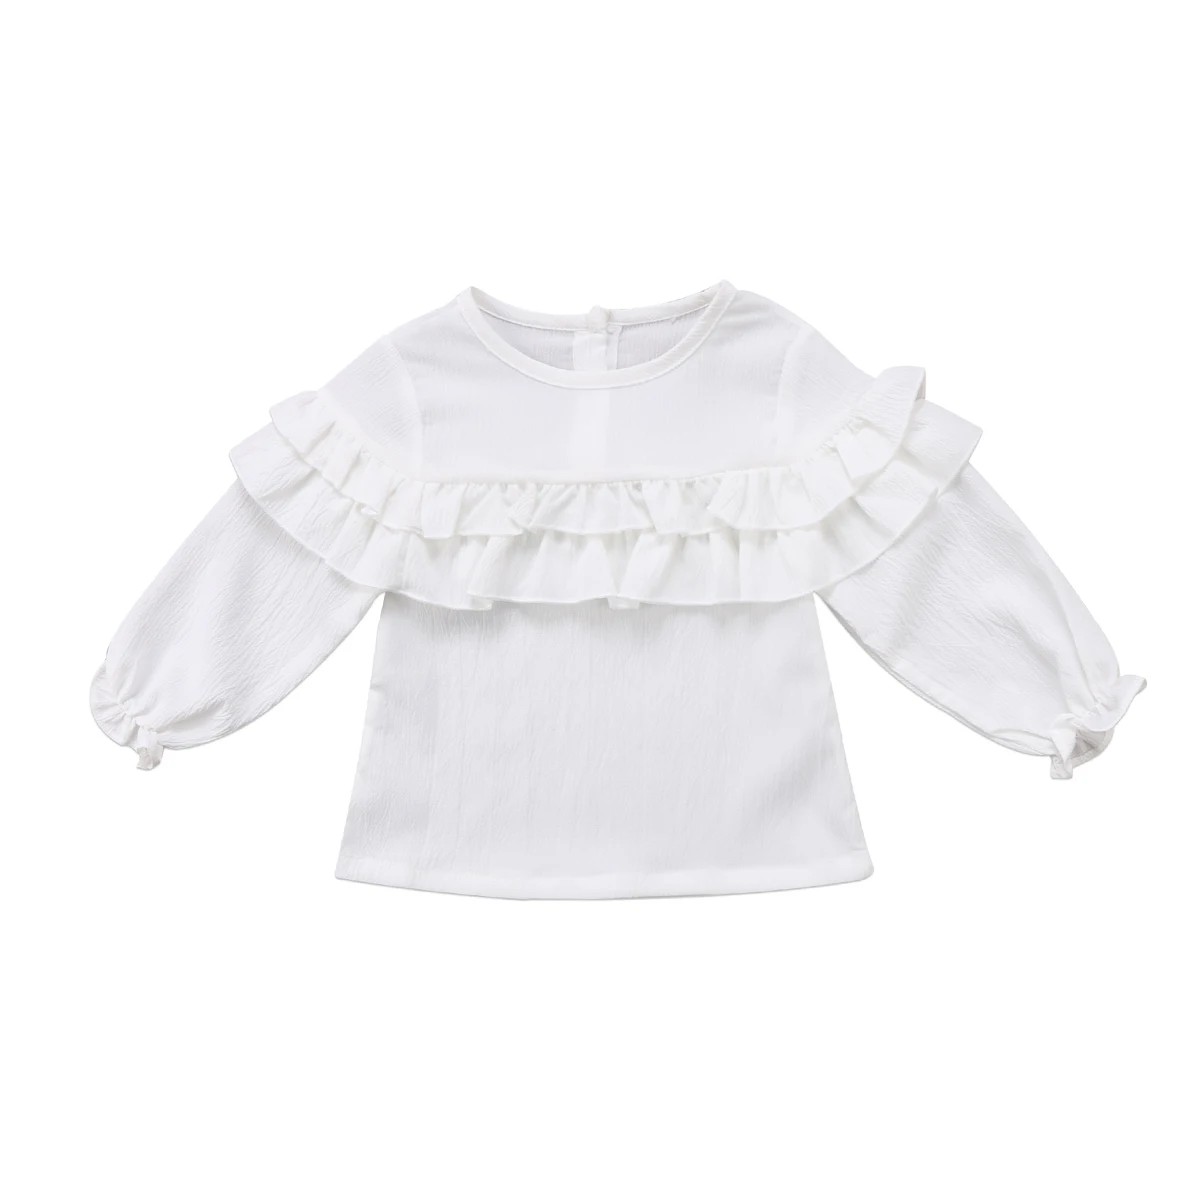 Г. Новая брендовая летняя футболка с длинными рукавами для новорожденных девочек одежда с оборками, рубашка Топы, однотонная одежда От 0 до 3 лет - Цвет: Белый